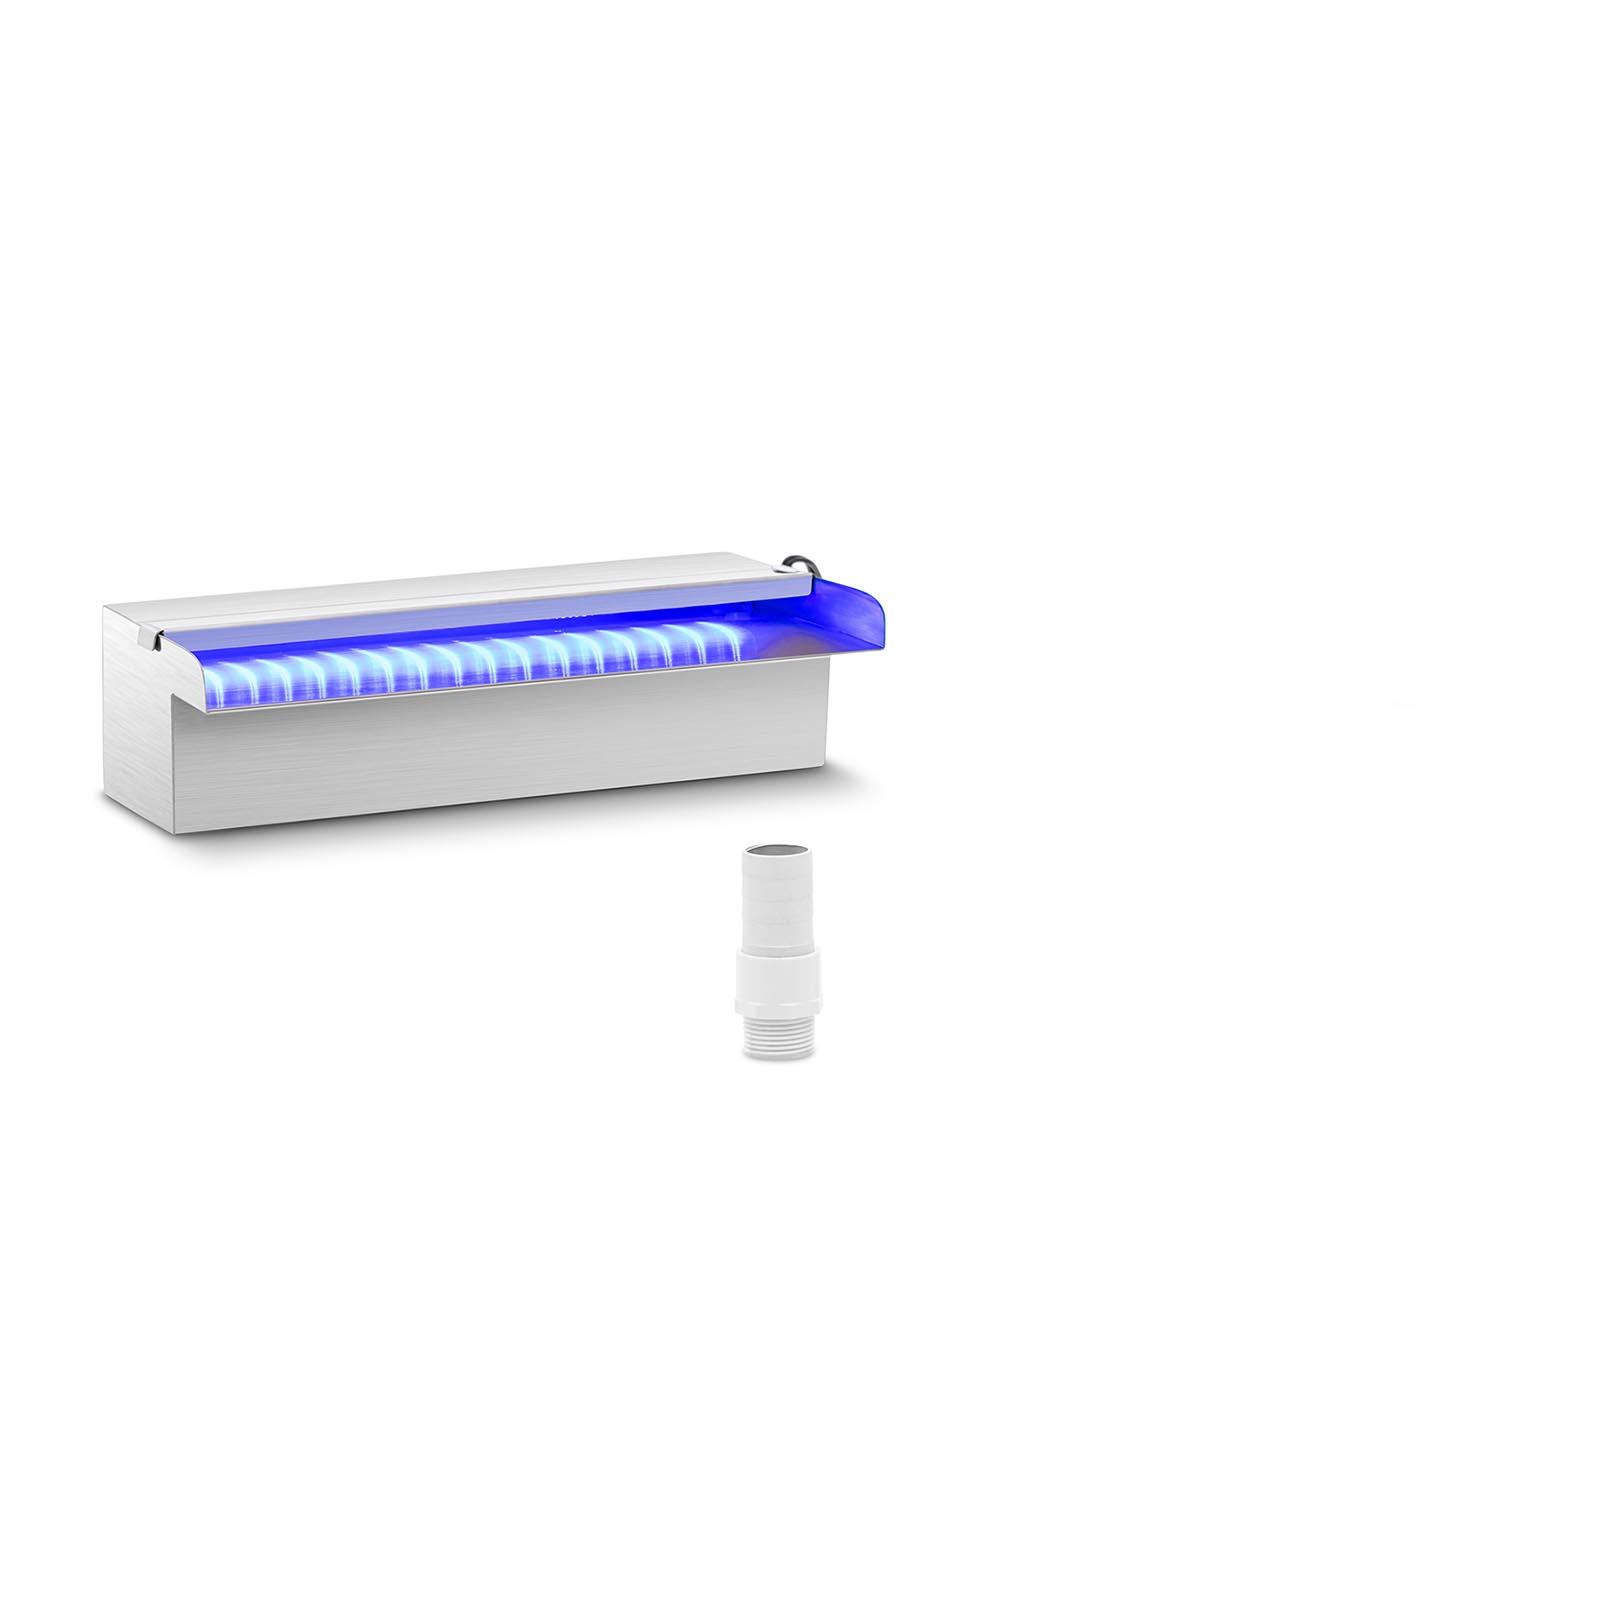 Douche - 30 cm - LED verlichting - Blauw / Wit